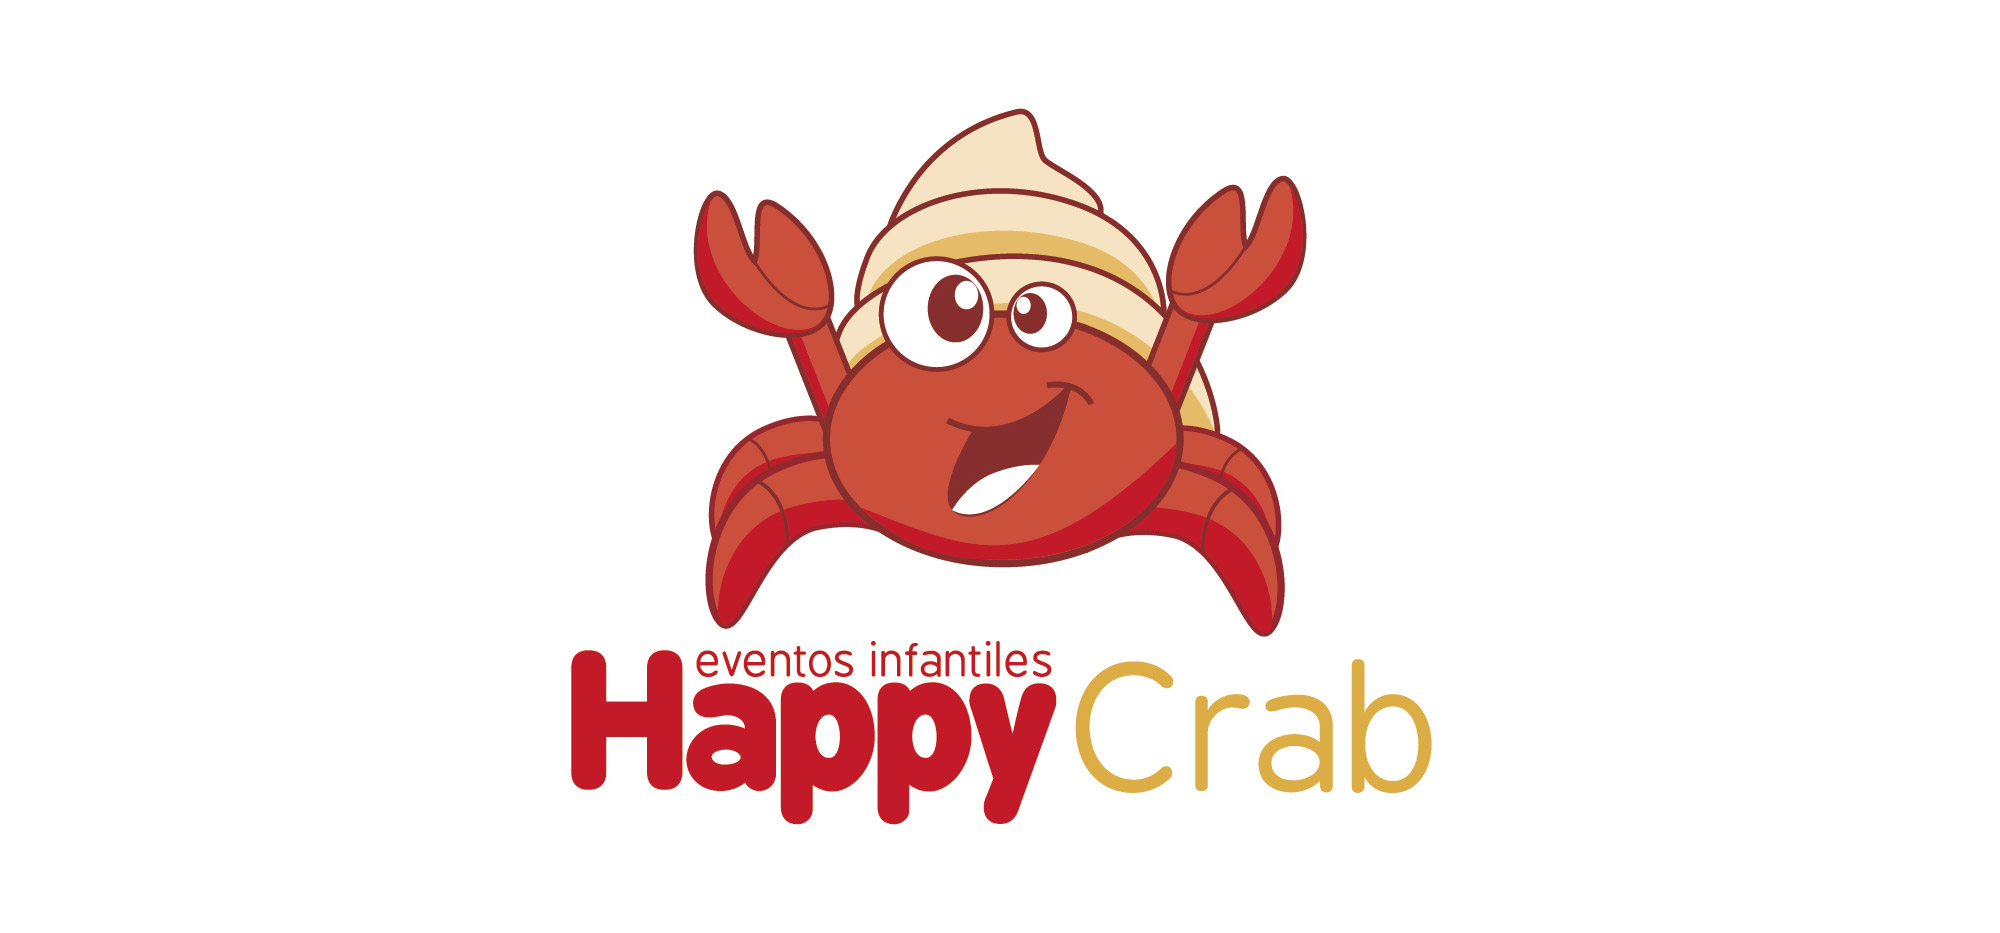 Happycrab - Logotipo